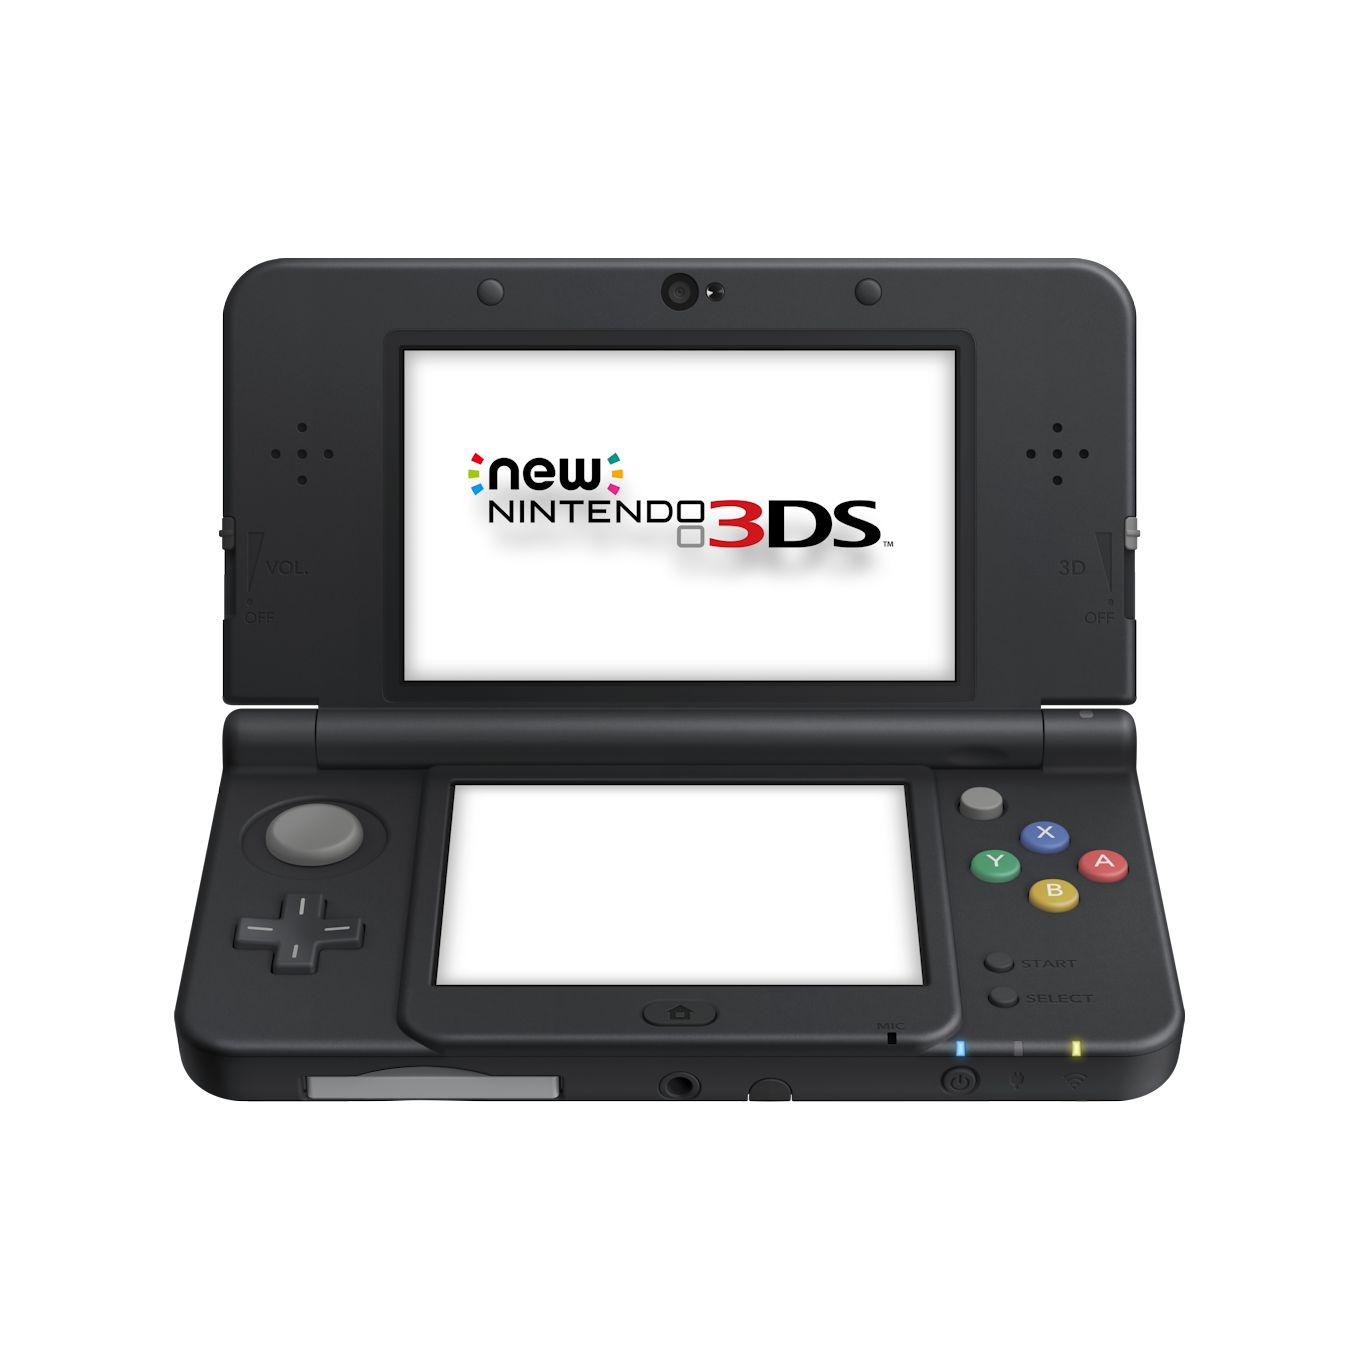 率先體驗「New Nintendo 3DS / 3DS LL」 享受由「C 搖桿」帶來的便利性